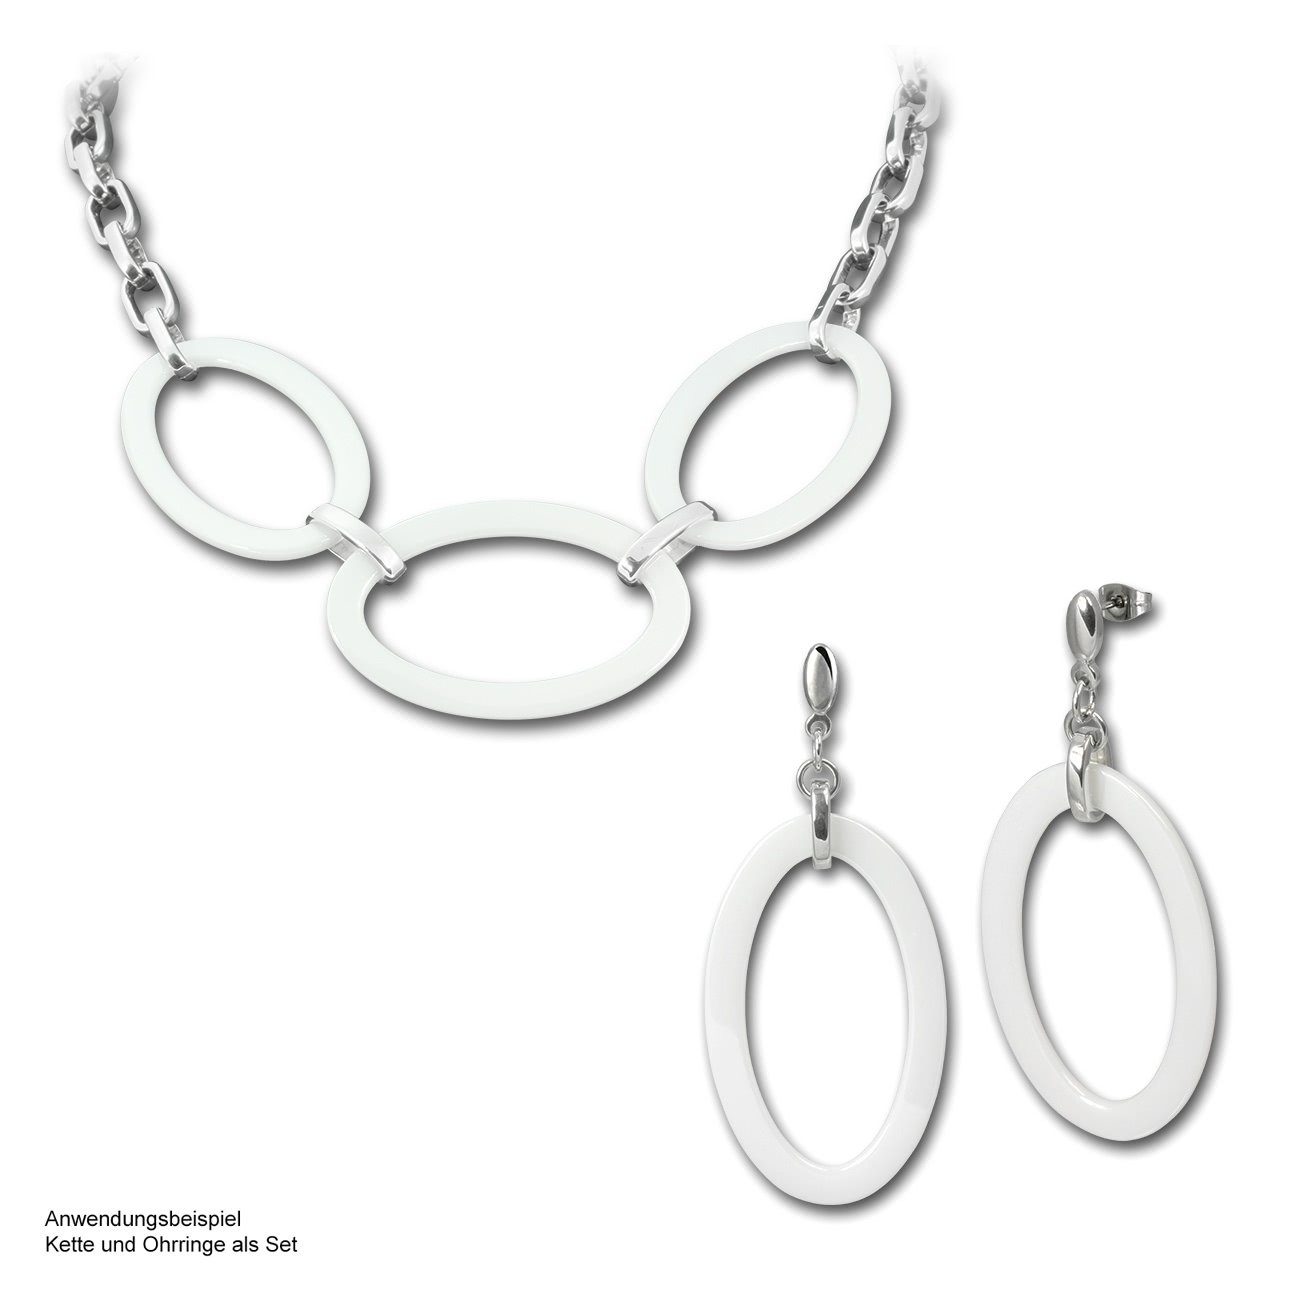 Halskette Steel) Halsketten weiß Edelstahl (Big Amello Big Oval) (Halskette), silber Amello aus Edelstahlkette Oval (Stainless Damen